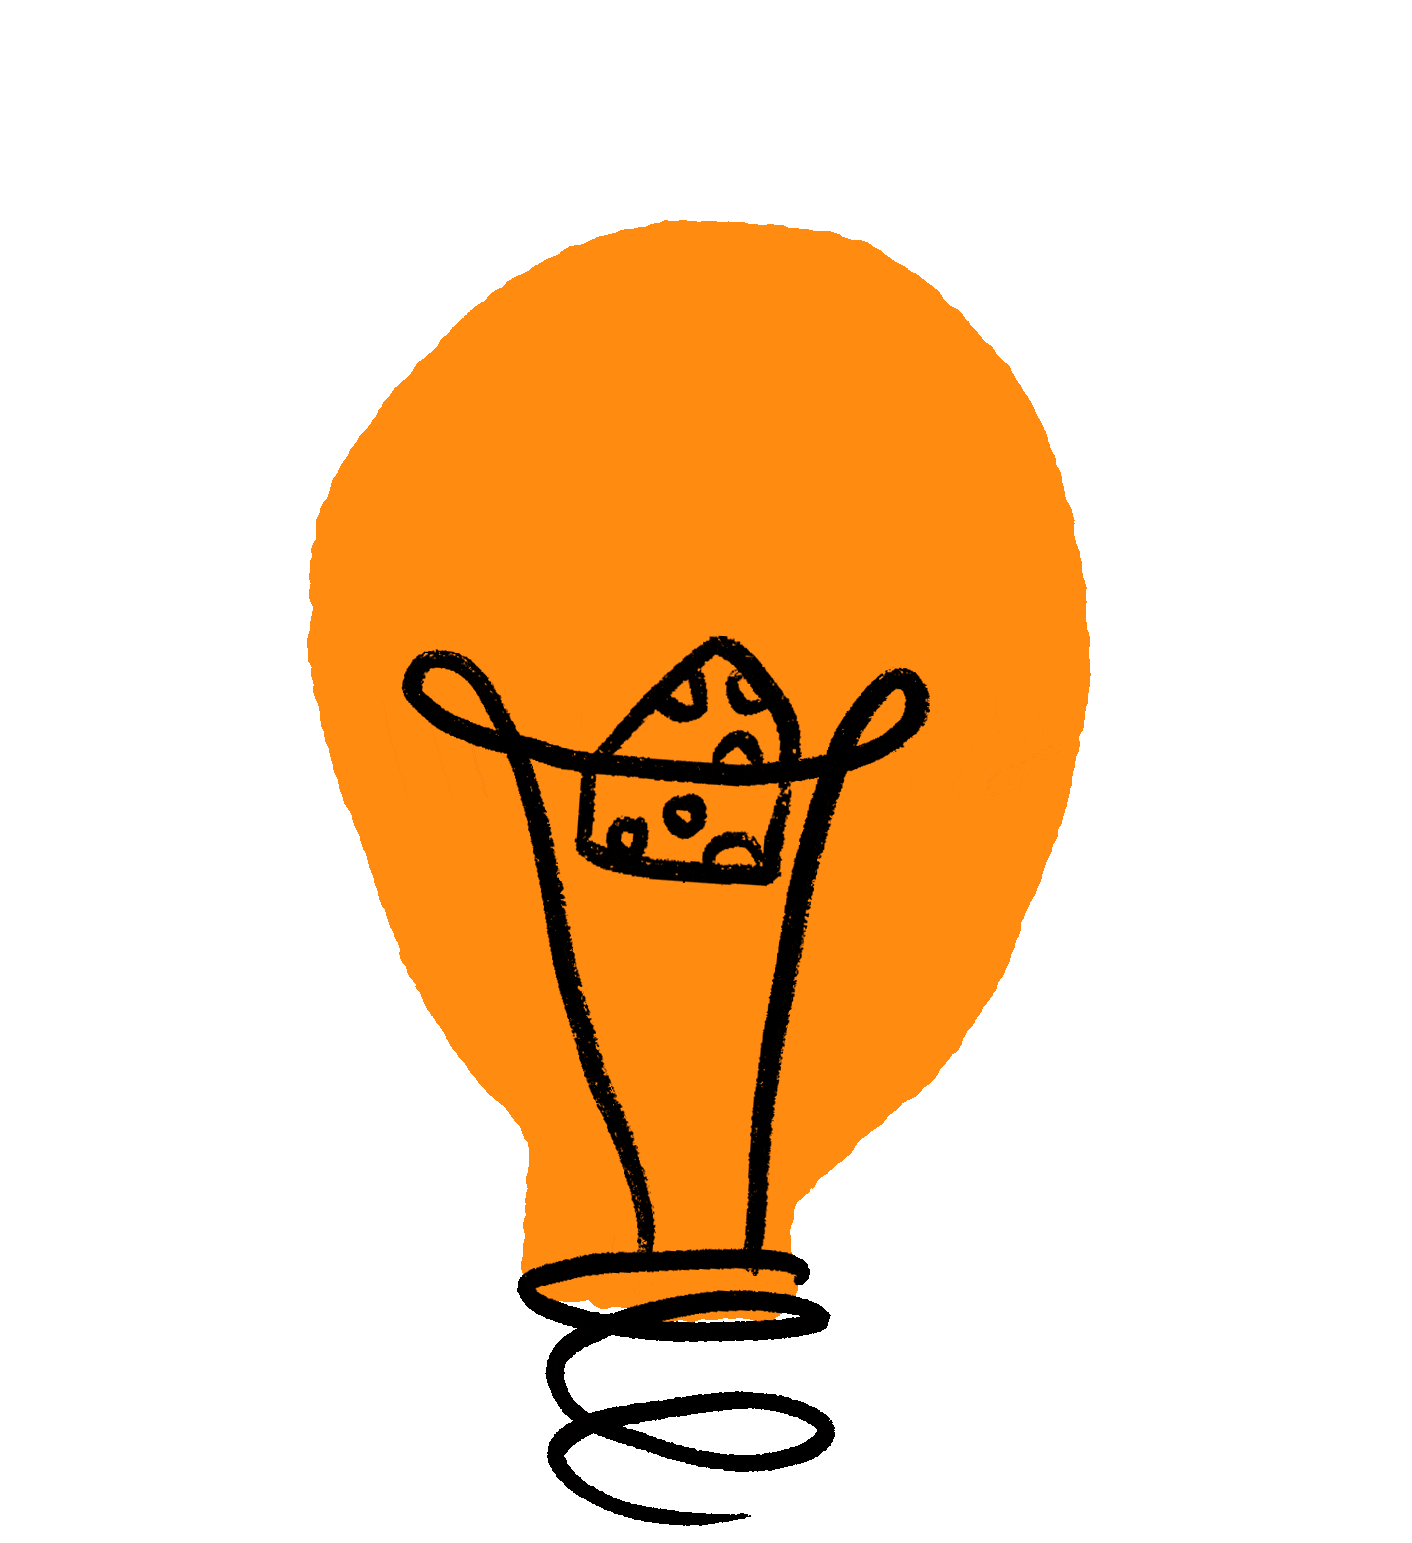 An animated light bulb